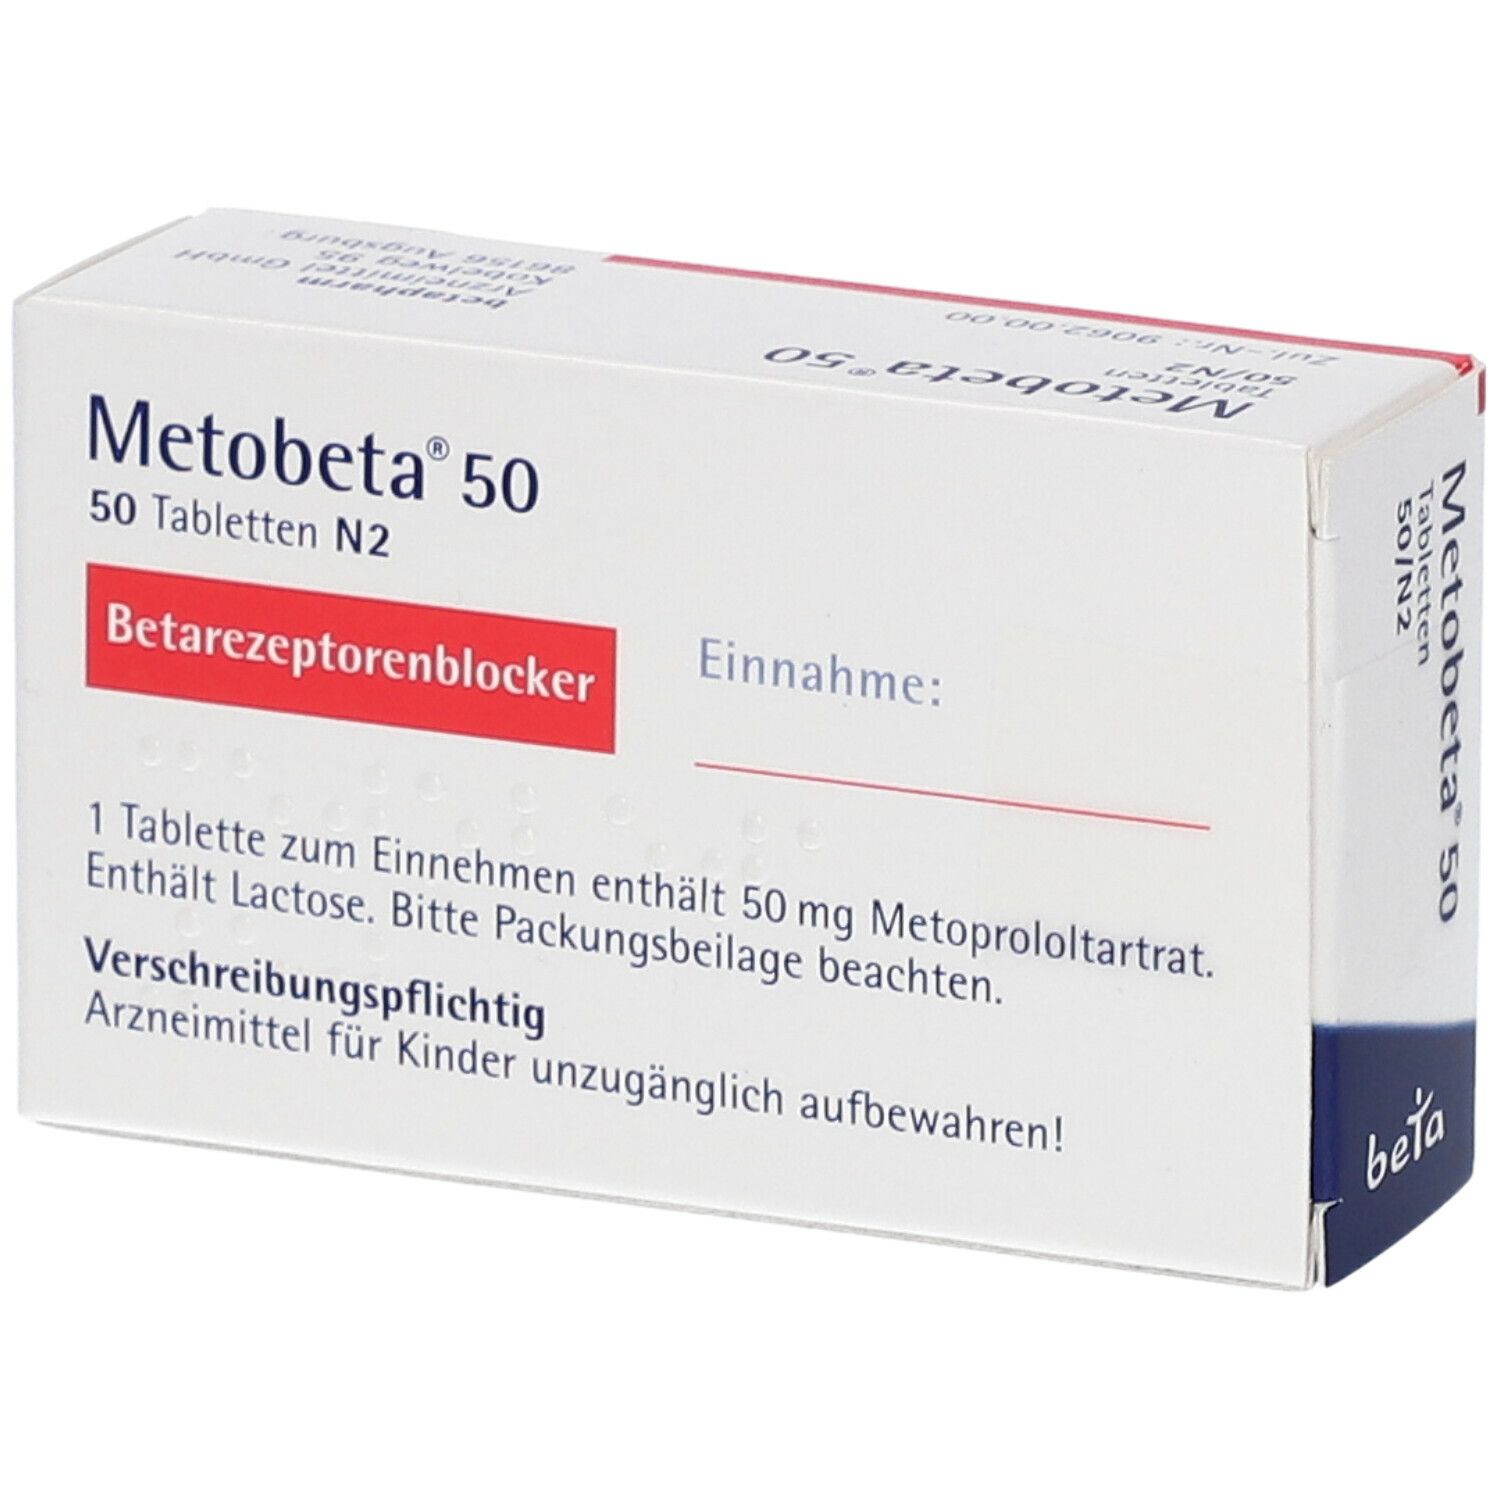 Metobeta® 50